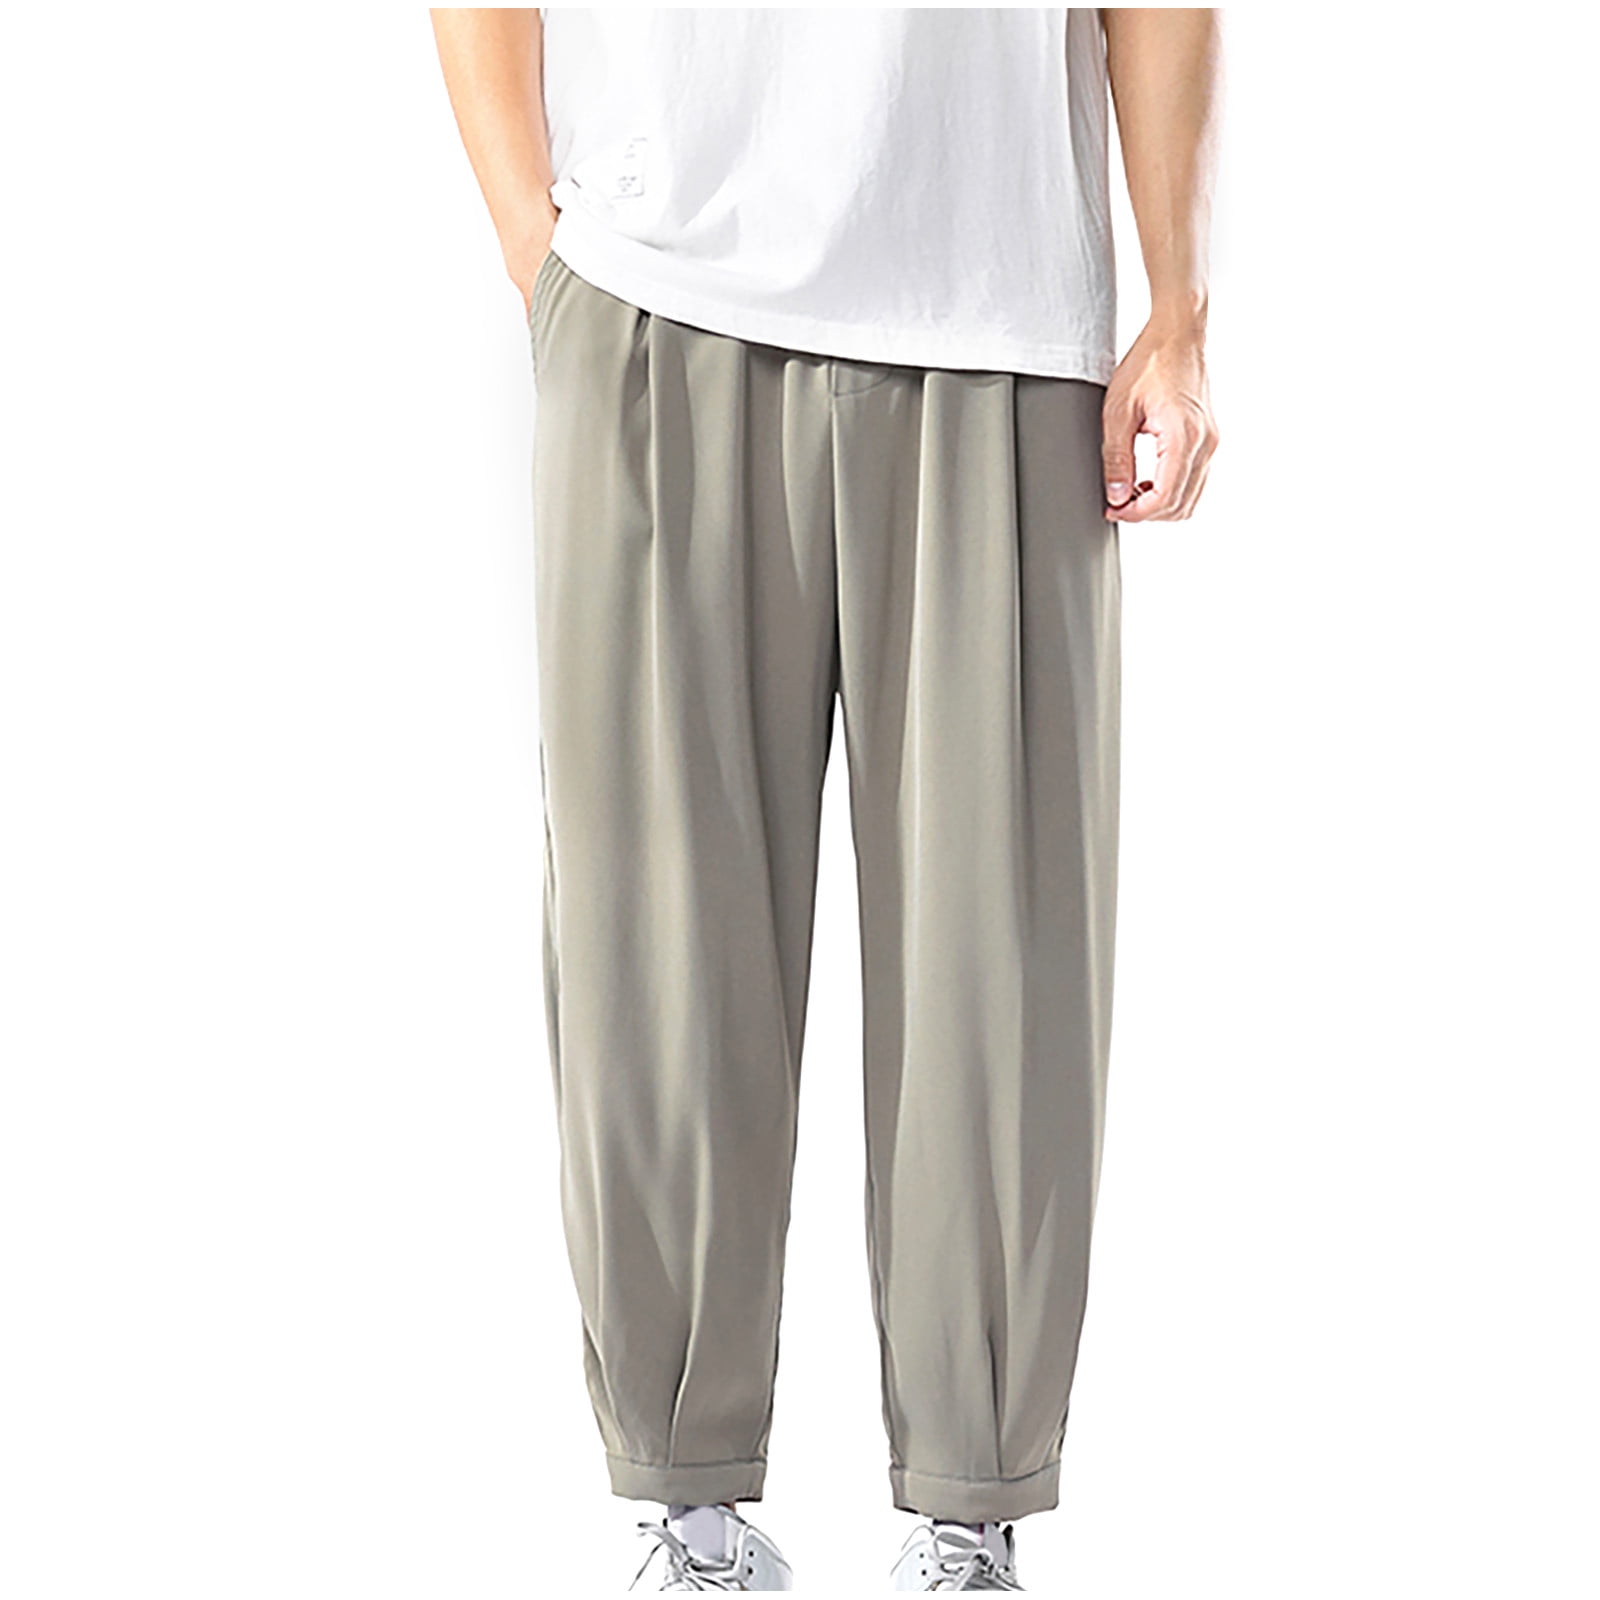 Men's Casual Cotton Sweatpants Ankle-Length Elastic Waist Loose